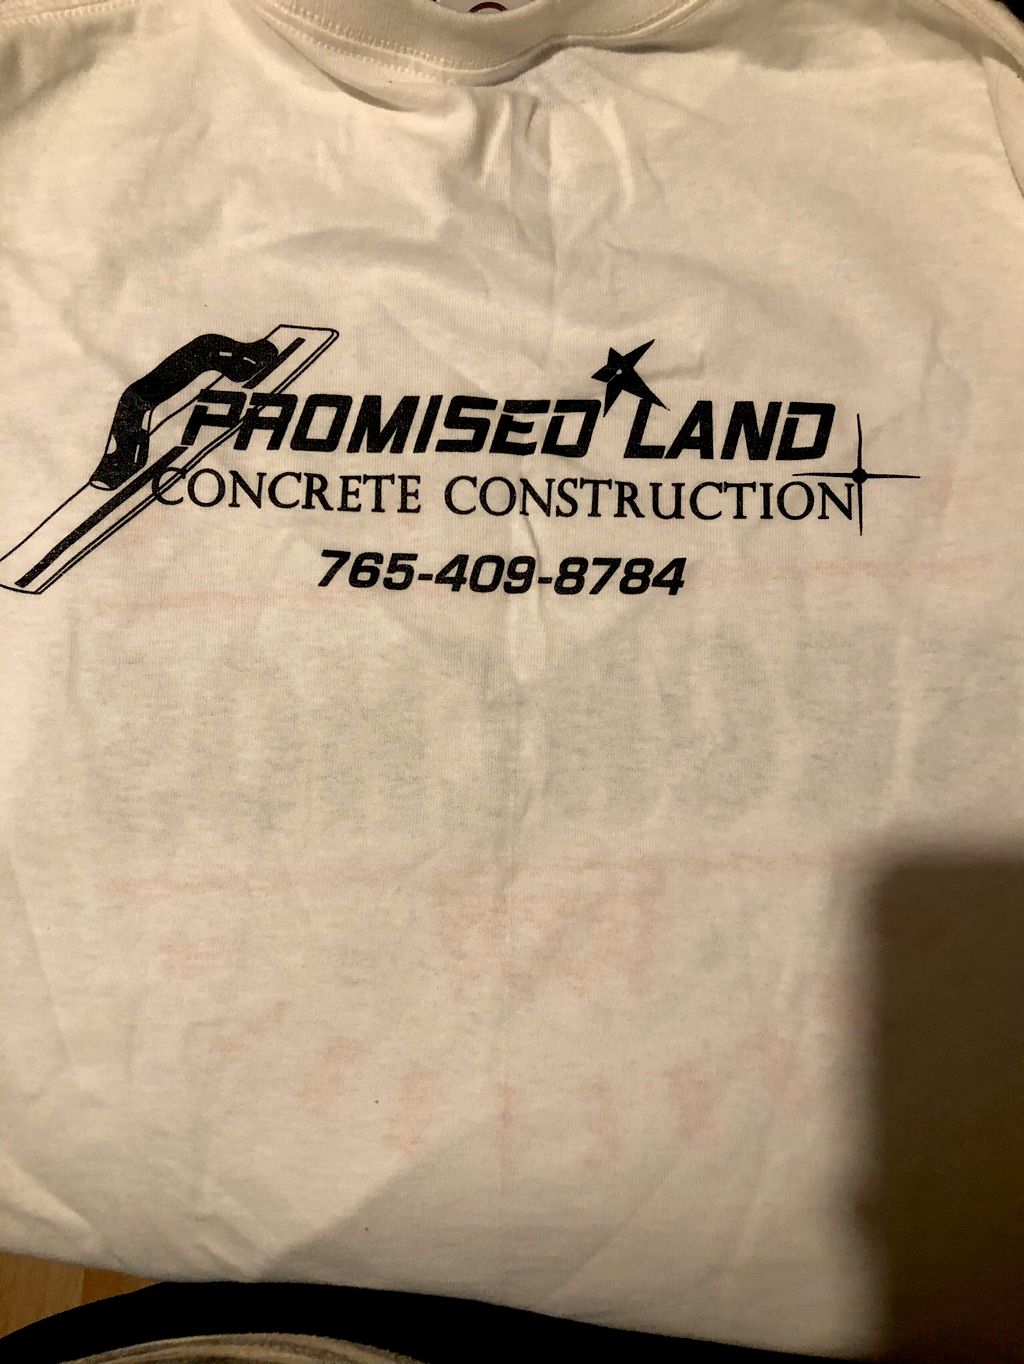 PROMISED LAND CONCRETE CONSTRUCTION LLC